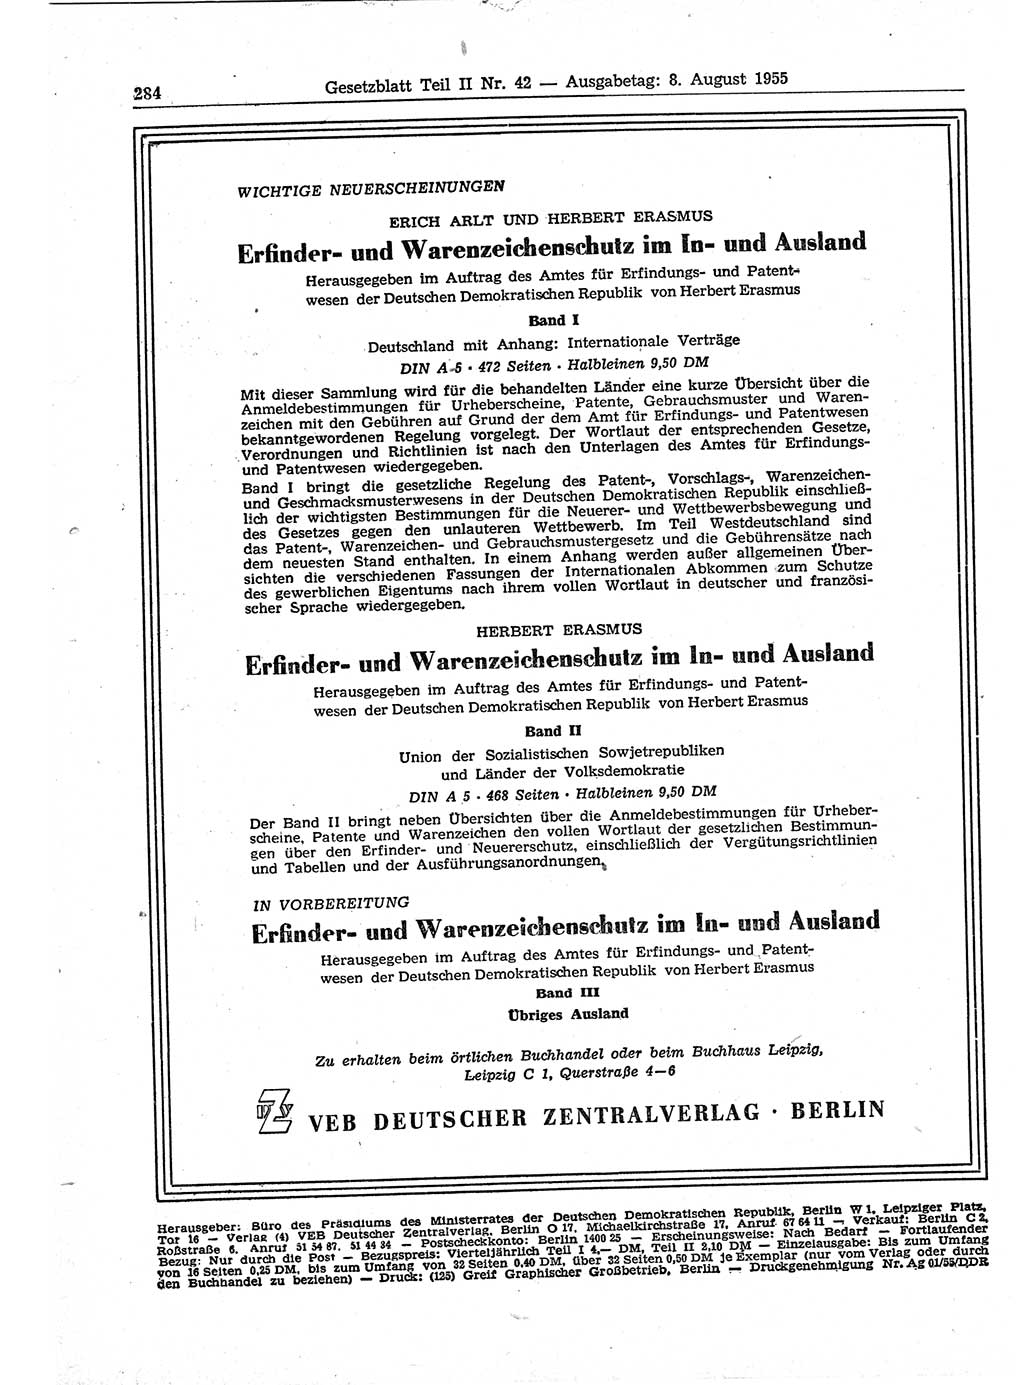 Gesetzblatt (GBl.) der Deutschen Demokratischen Republik (DDR) Teil ⅠⅠ 1955, Seite 284 (GBl. DDR ⅠⅠ 1955, S. 284)